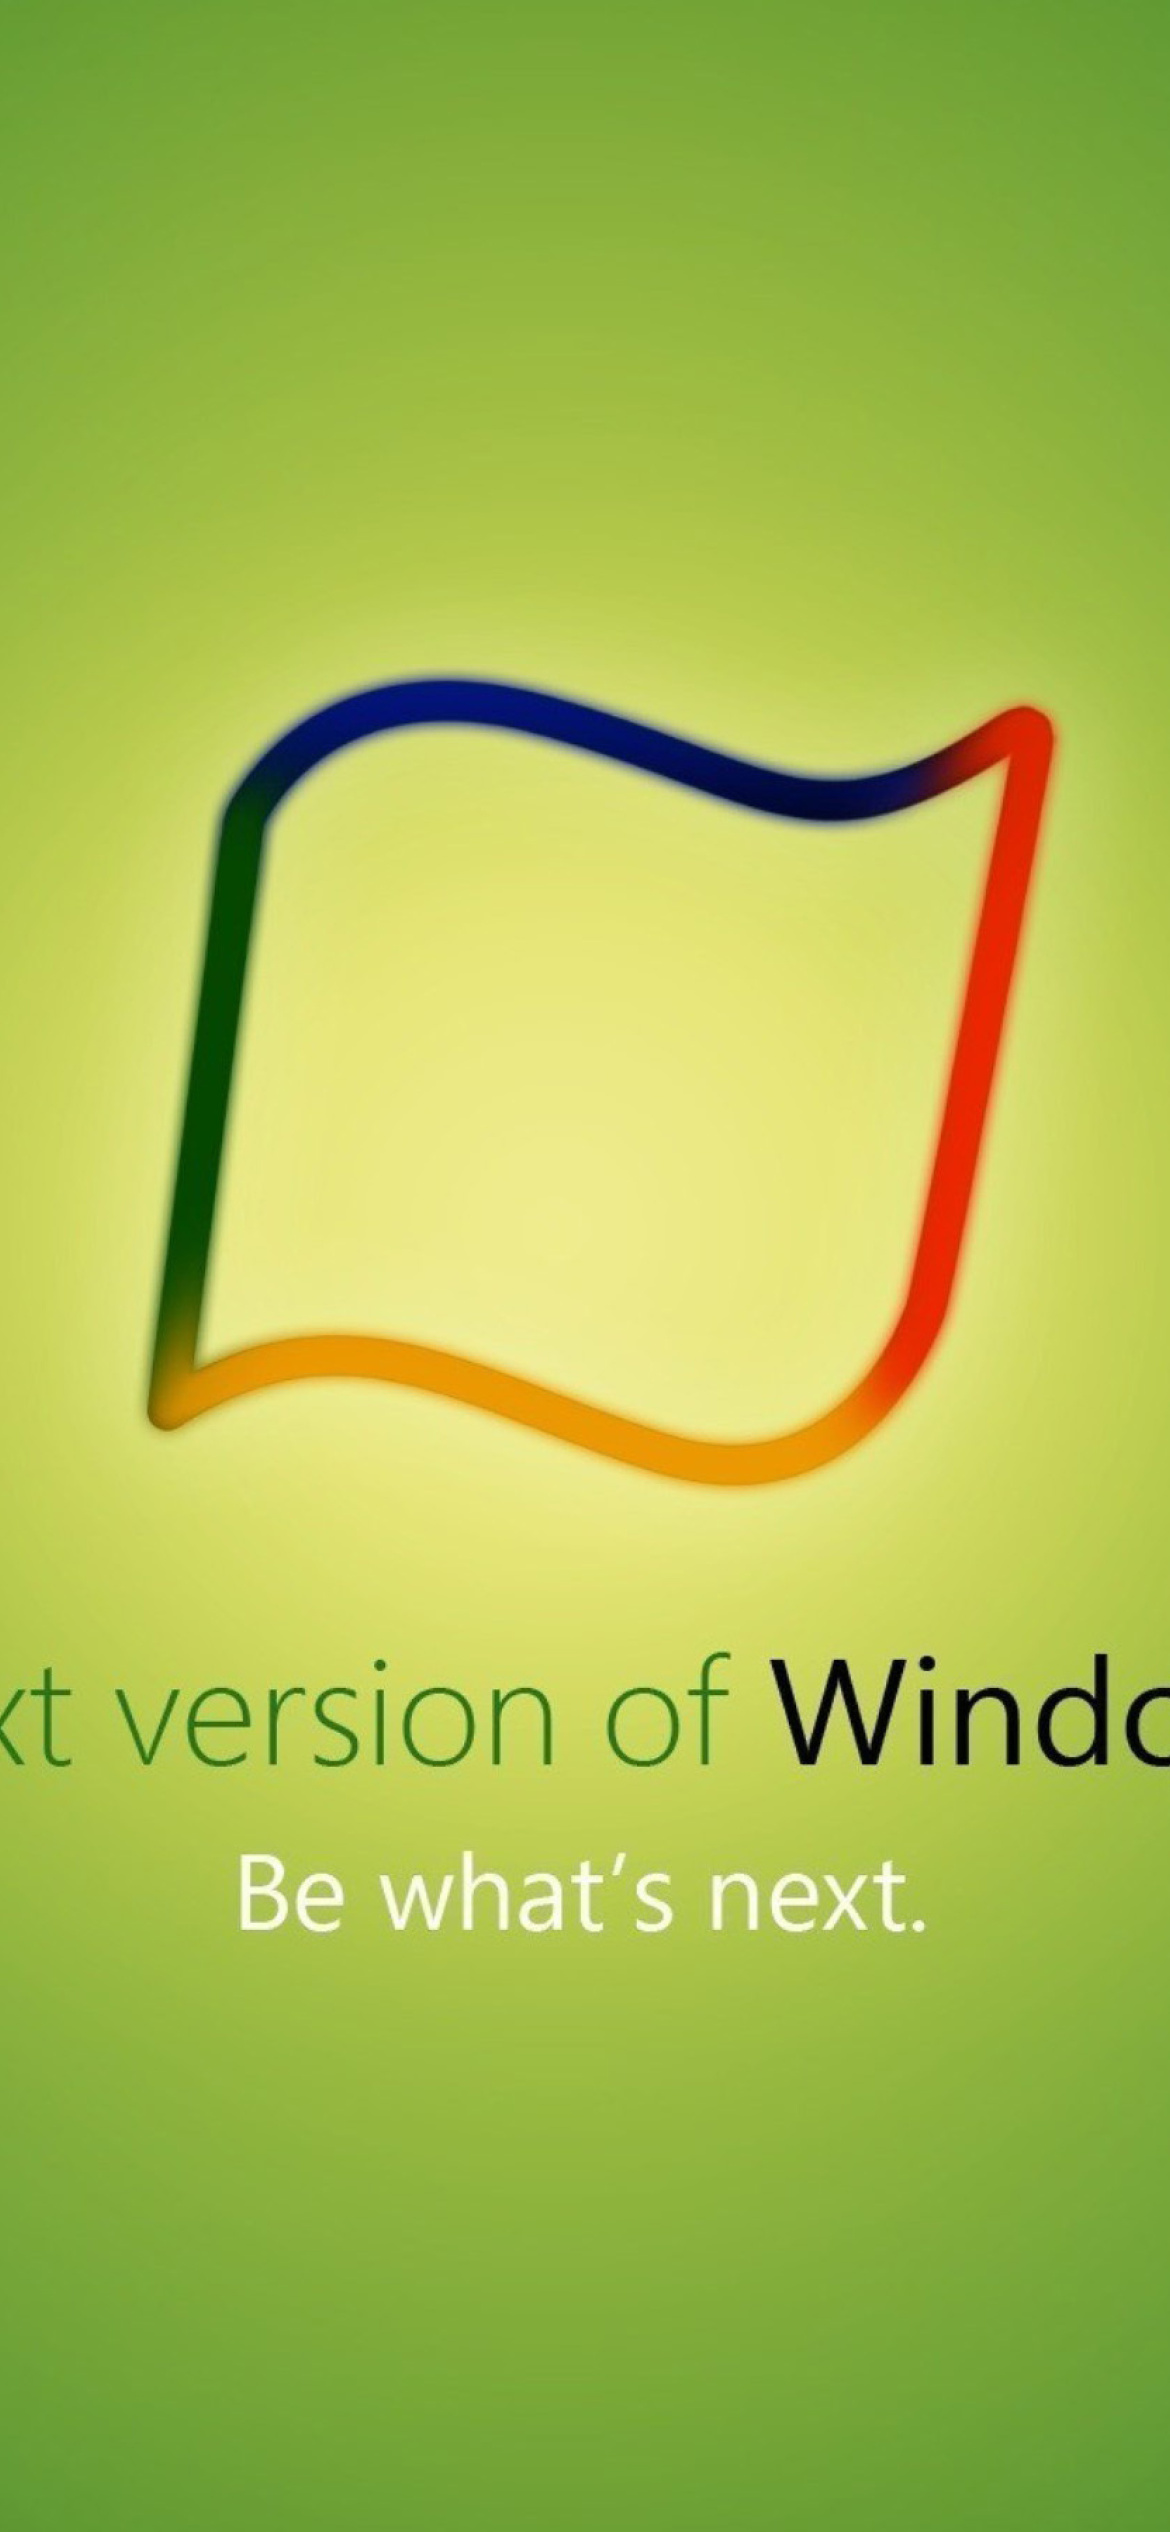 Обои Windows 8 Green Edition 1170x2532